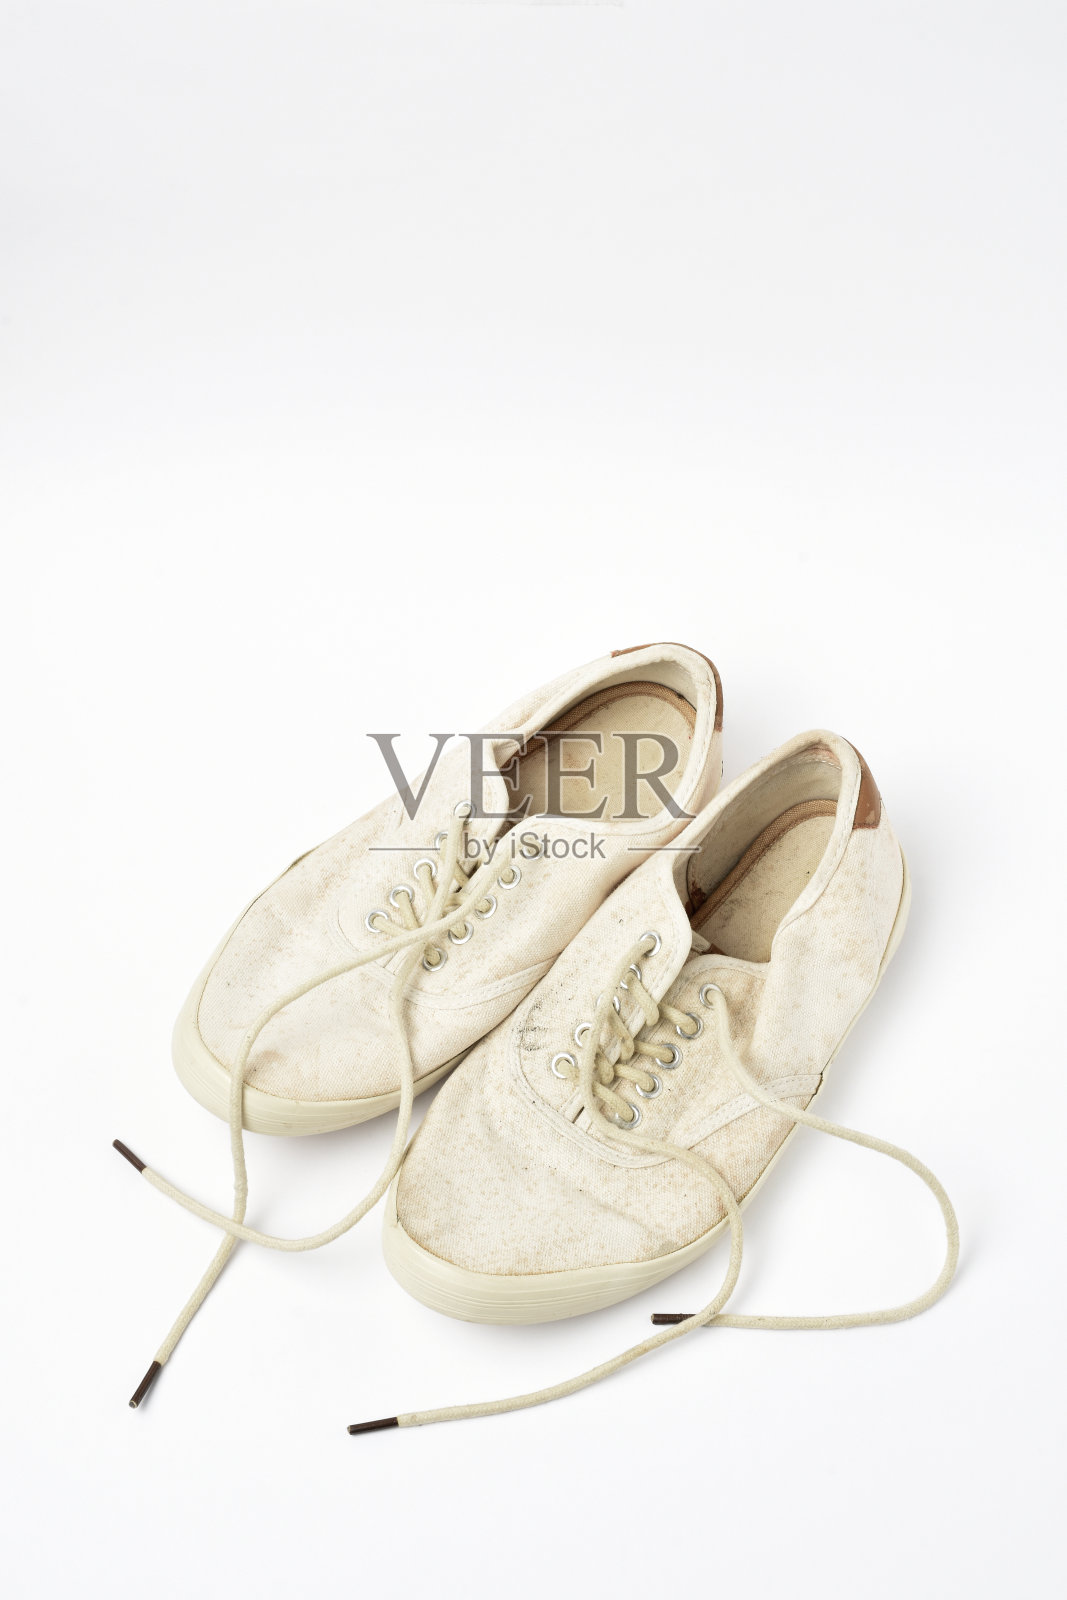 一双白色背景的旧鞋照片摄影图片